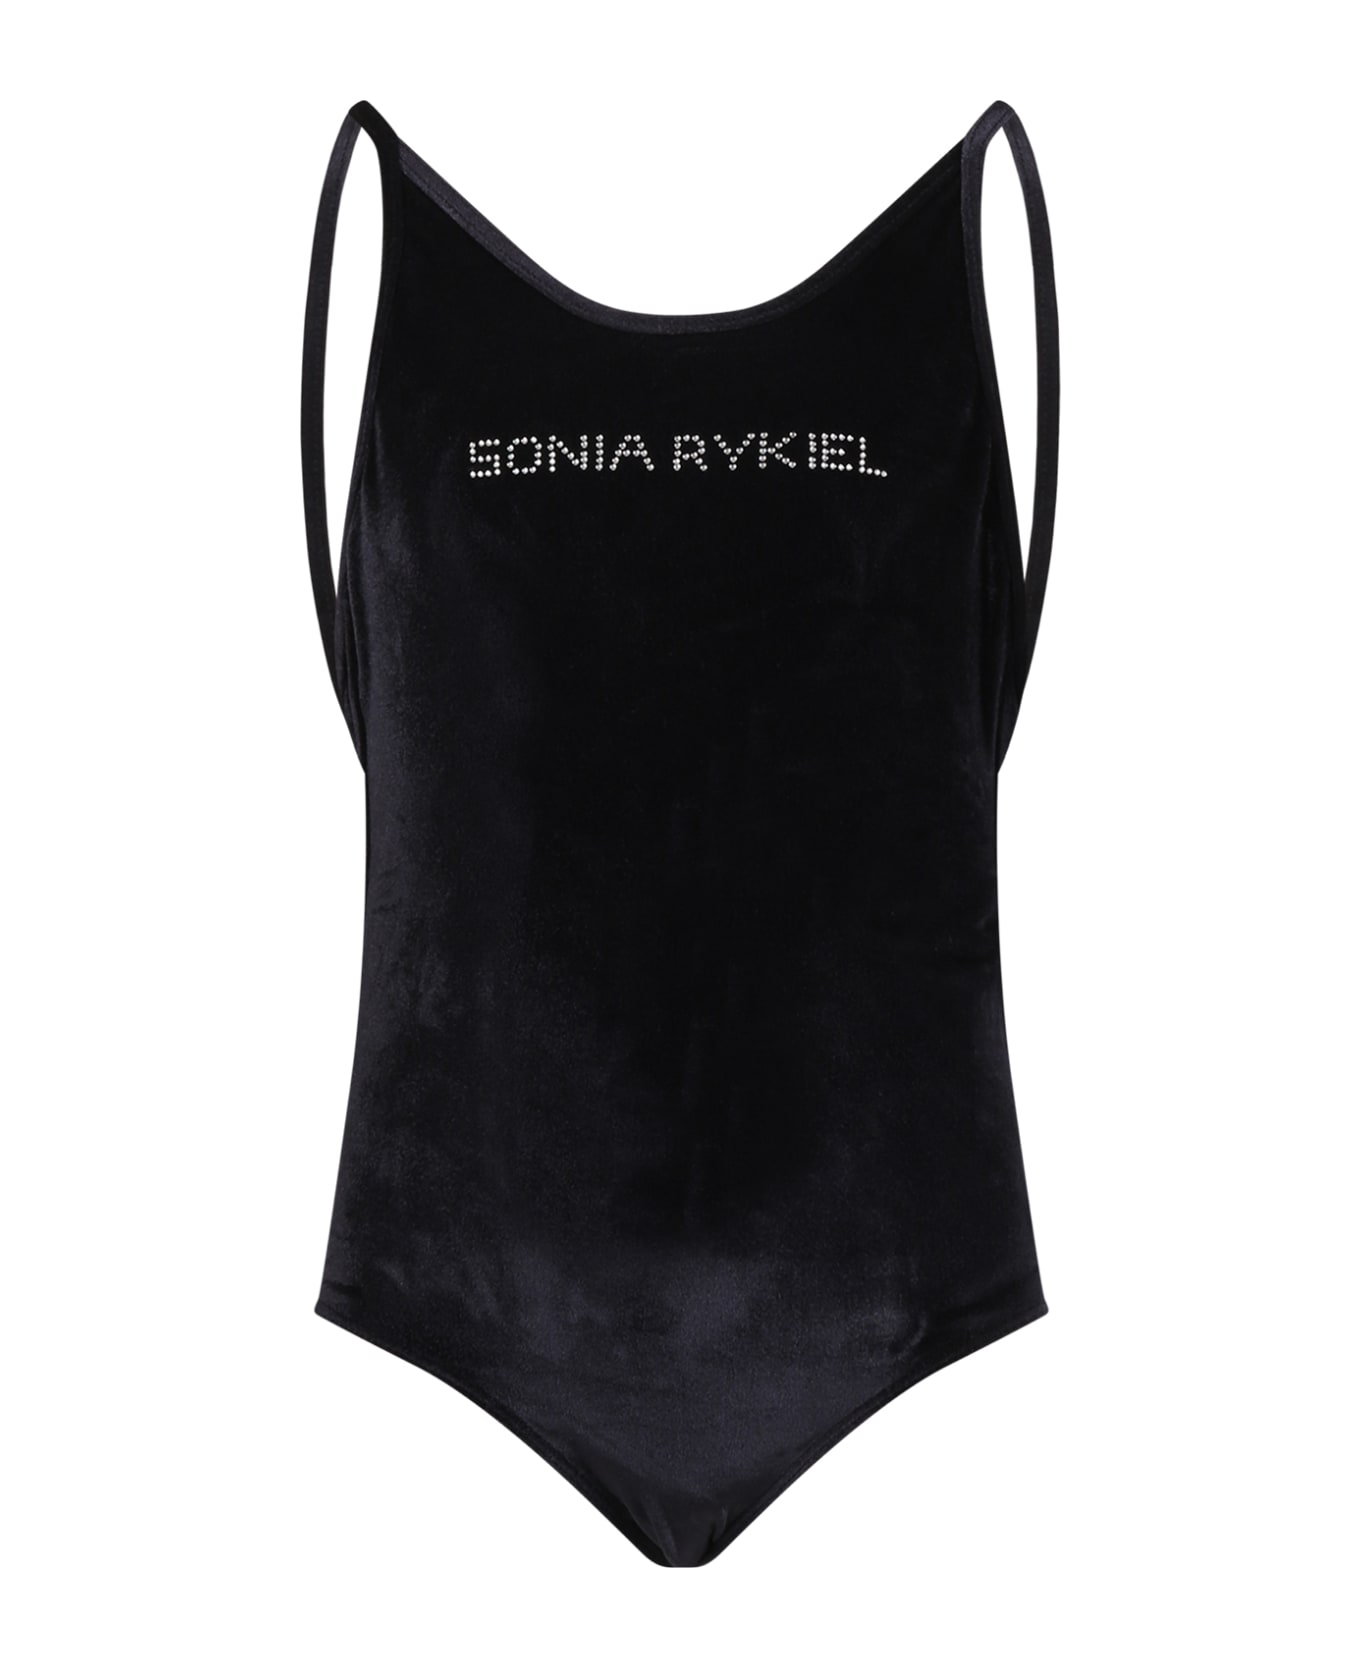 Rykiel Enfant Black Swimsuit For Girl With Logo - Black